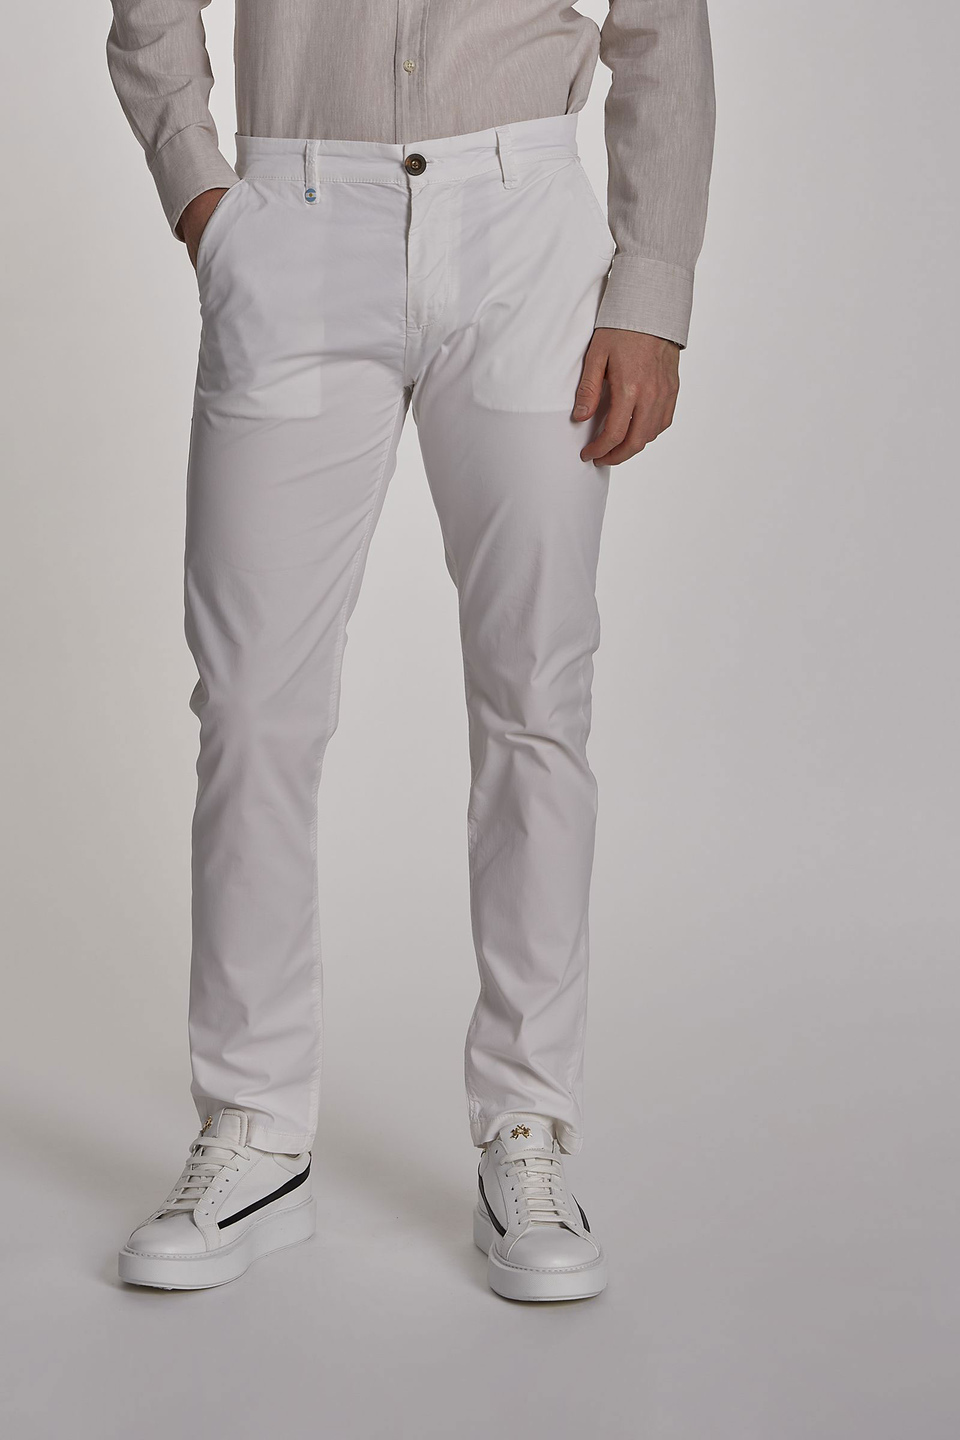 Pantalon chino homme en coton stretch coupe slim - La Martina - Official Online Shop